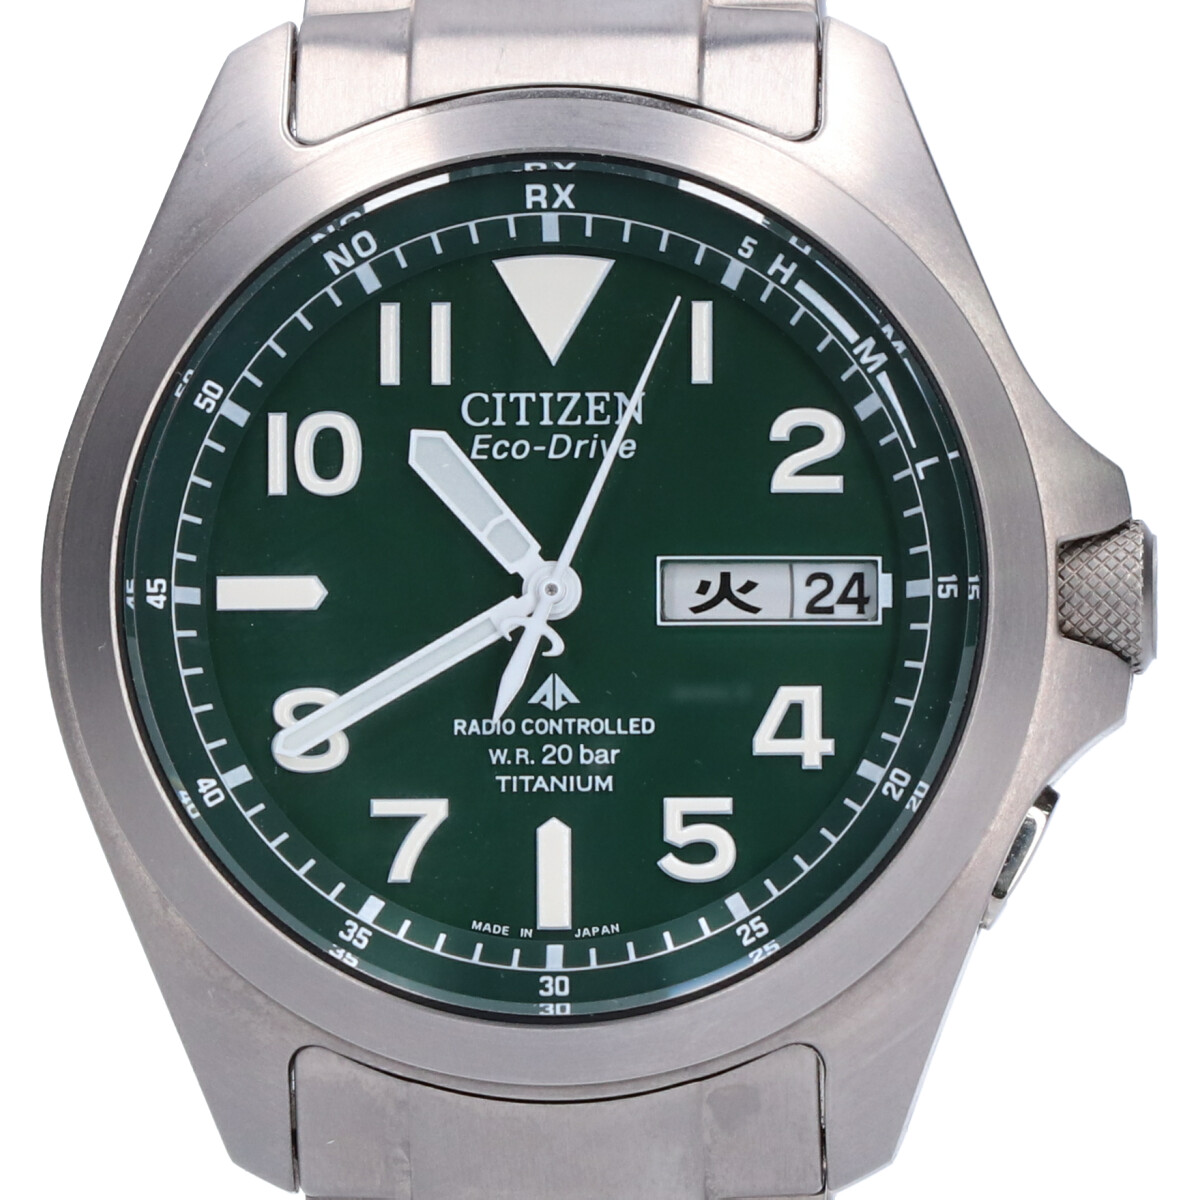 シチズンのPMD56-2951 プロマスター スーパーチタニウム エコドライブ 腕時計の買取実績です。